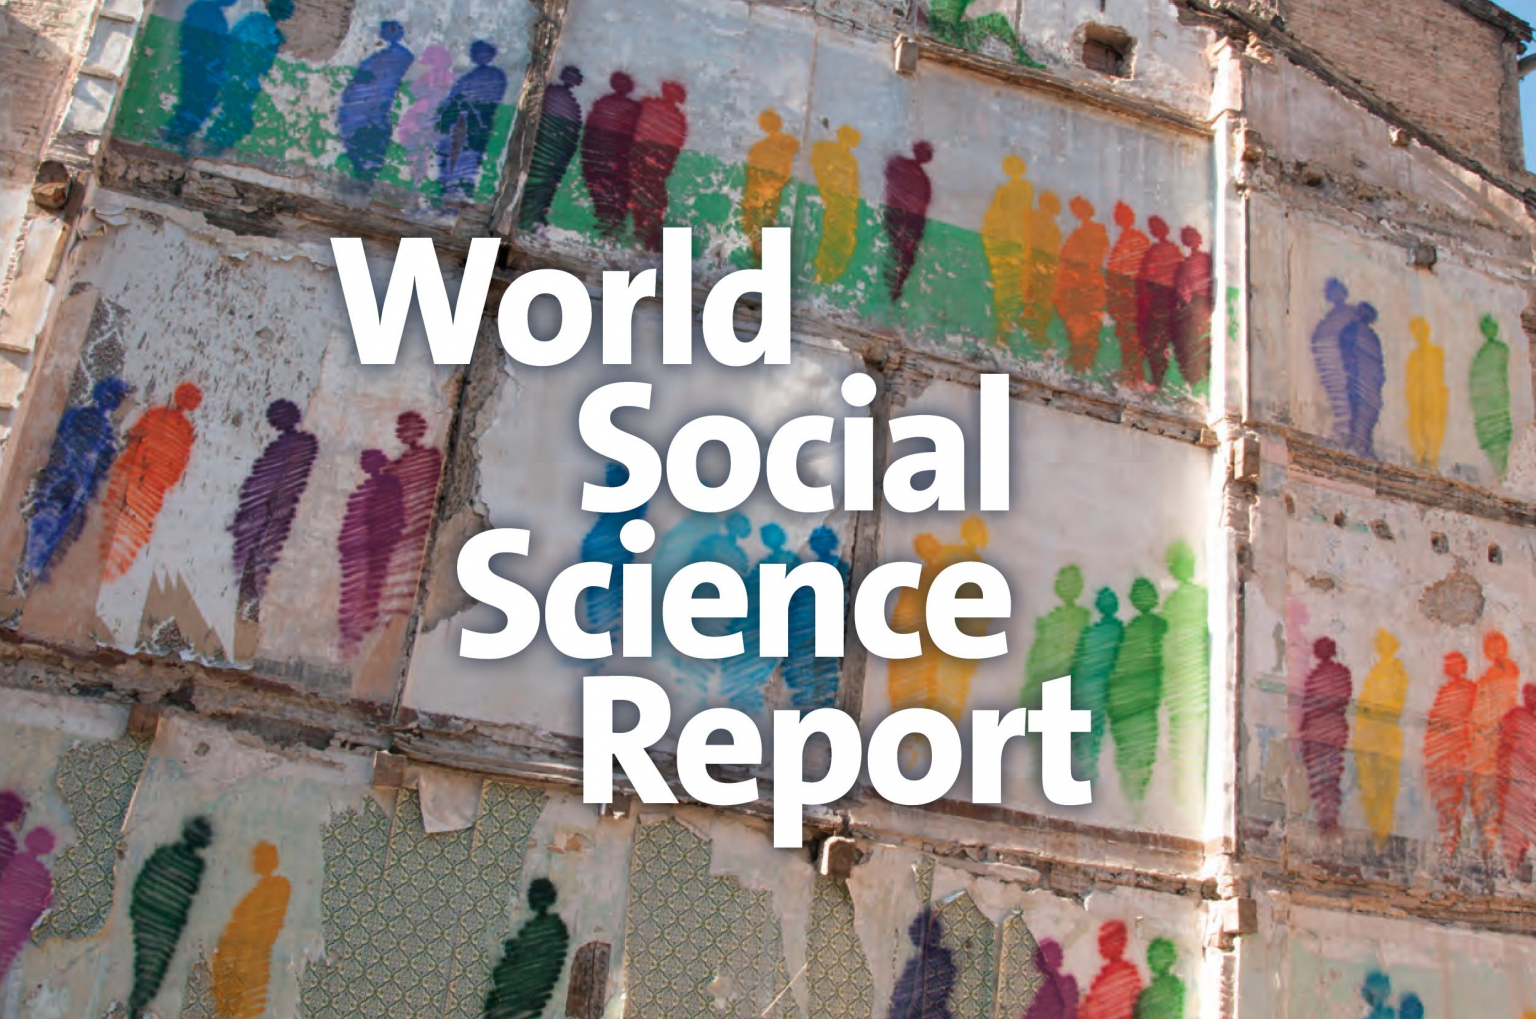 Relatório Mundial de Ciências Sociais 2016: Desafiando Desigualdades - Caminhos para um Mundo Justo